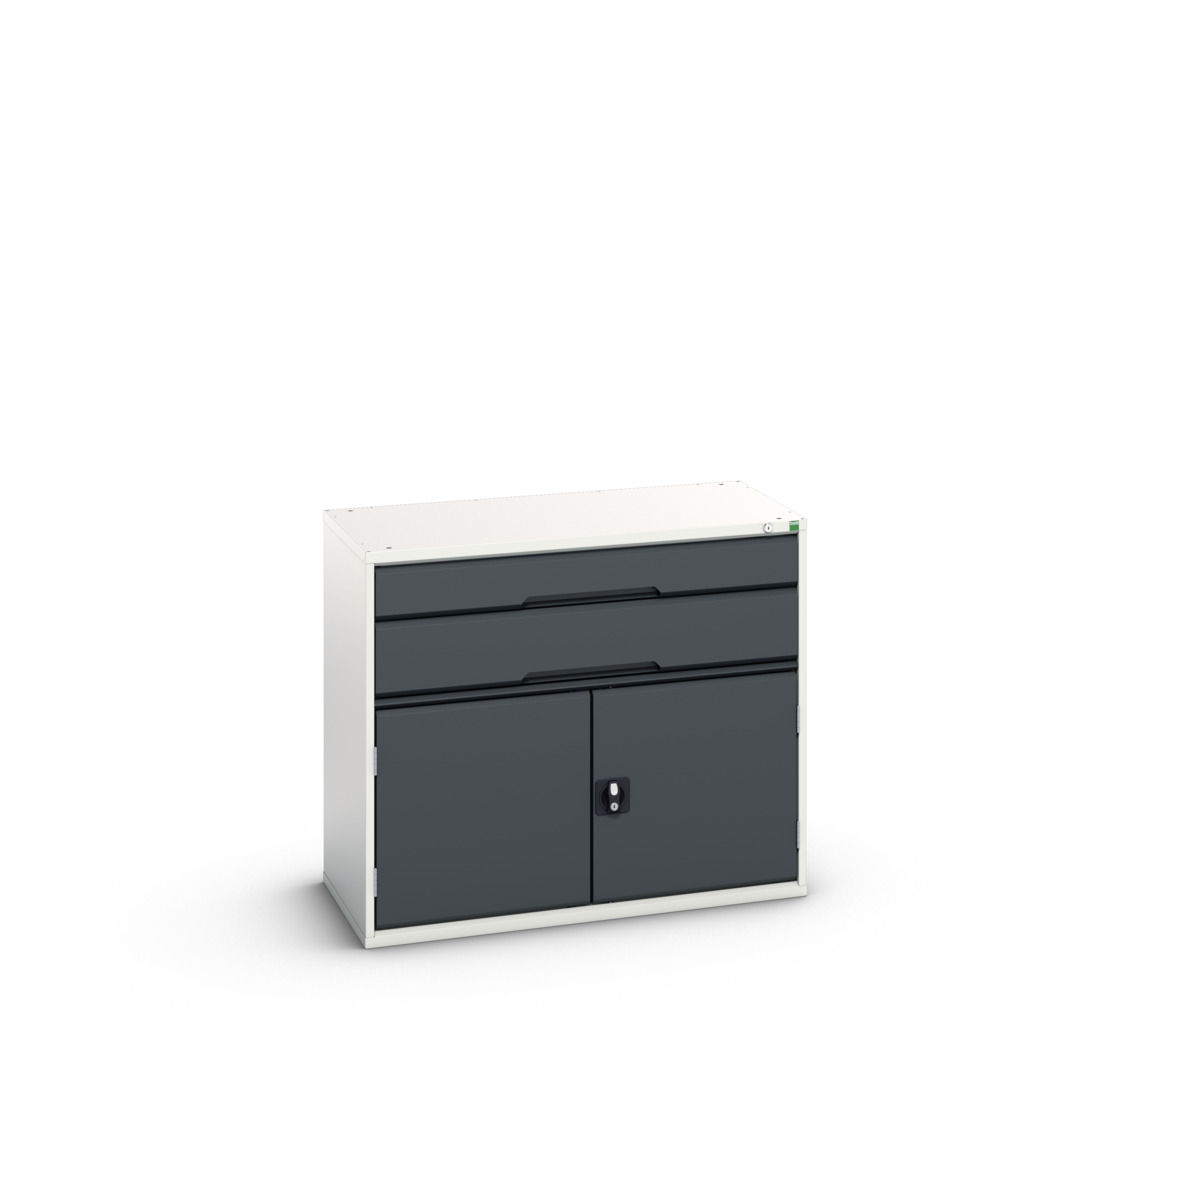 16925237.19 - verso drawer-door cabinet